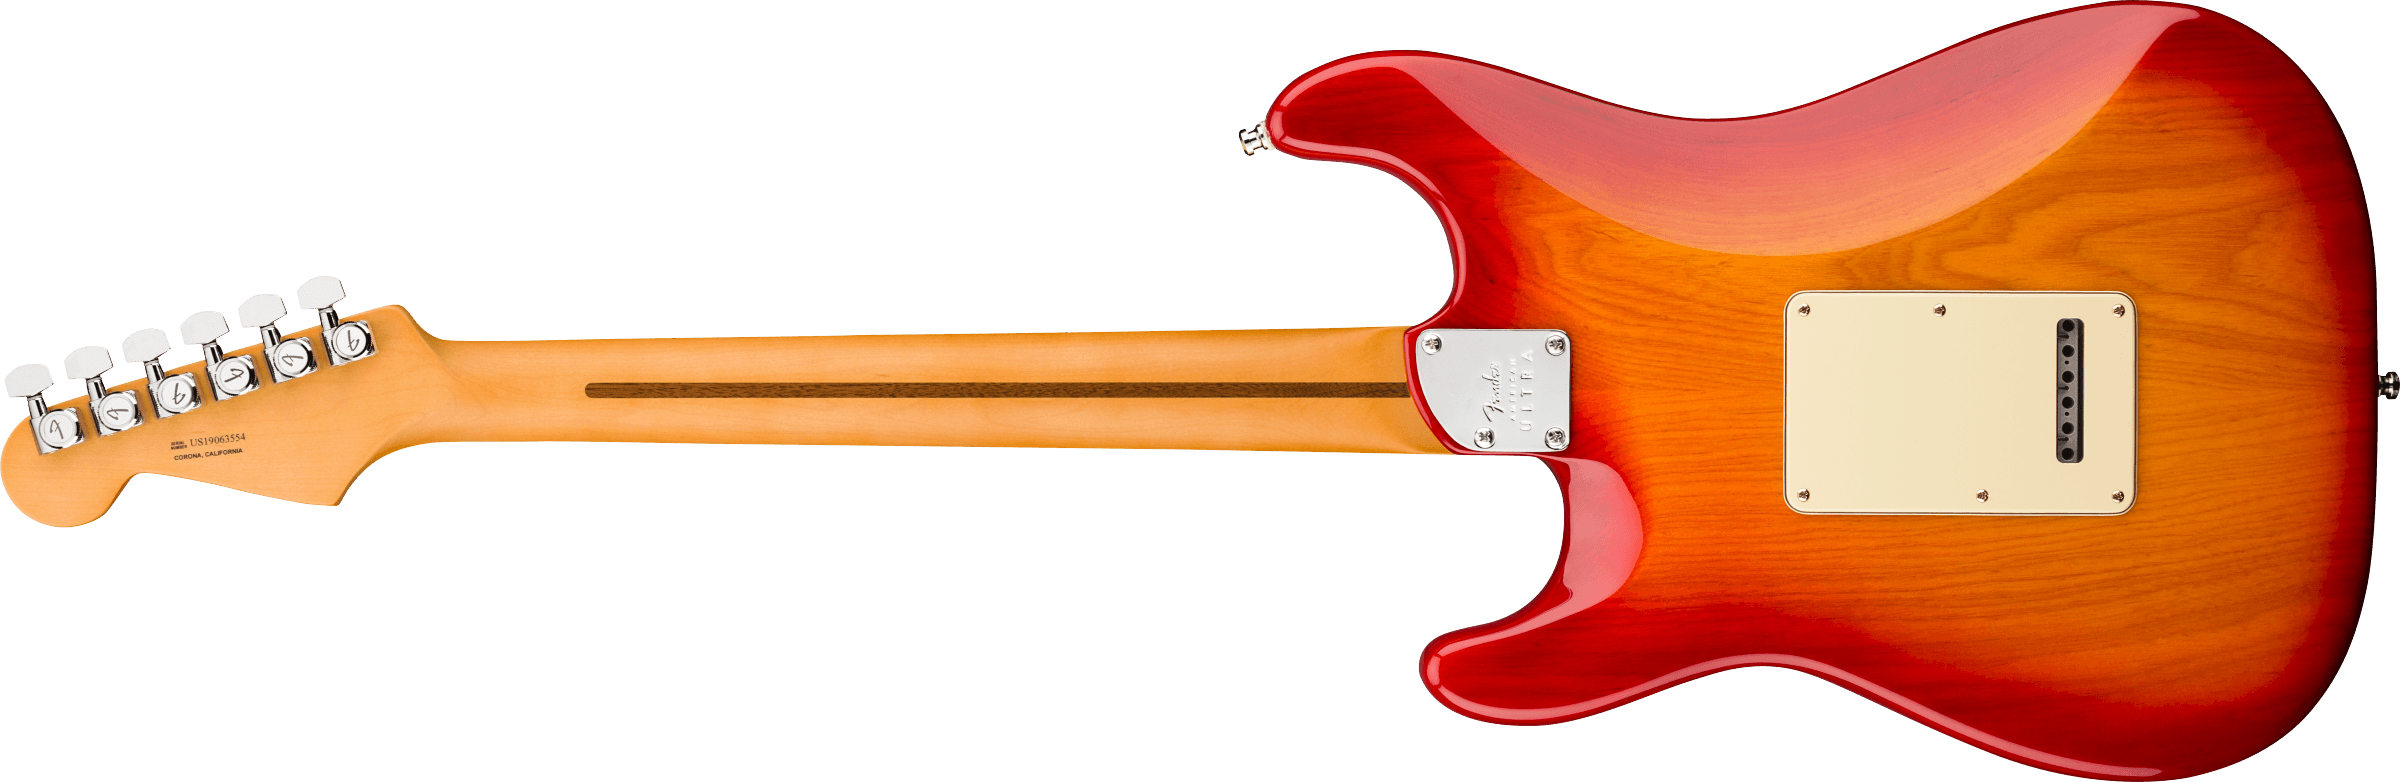 Fender Strat American Ultra Hss 2019 Usa Mn - Plasma Red Burst - Guitare Électrique Forme Str - Variation 1